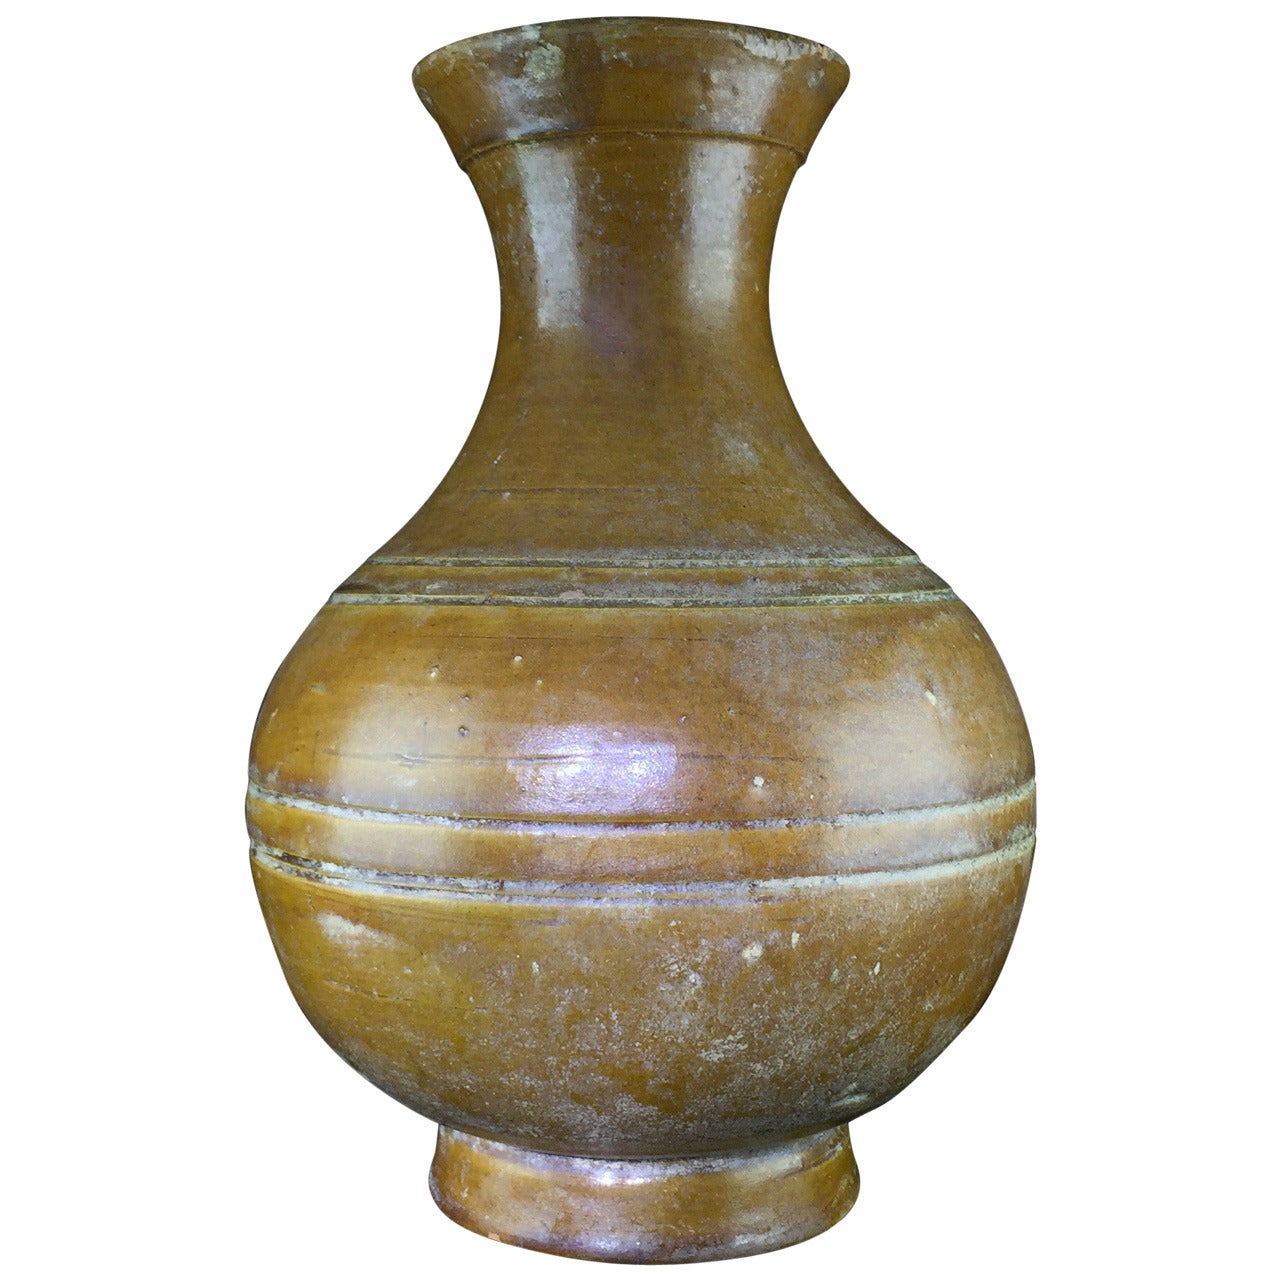 Chinese amber glaze Hu, Eastern Han Dynasty 25-221 AD